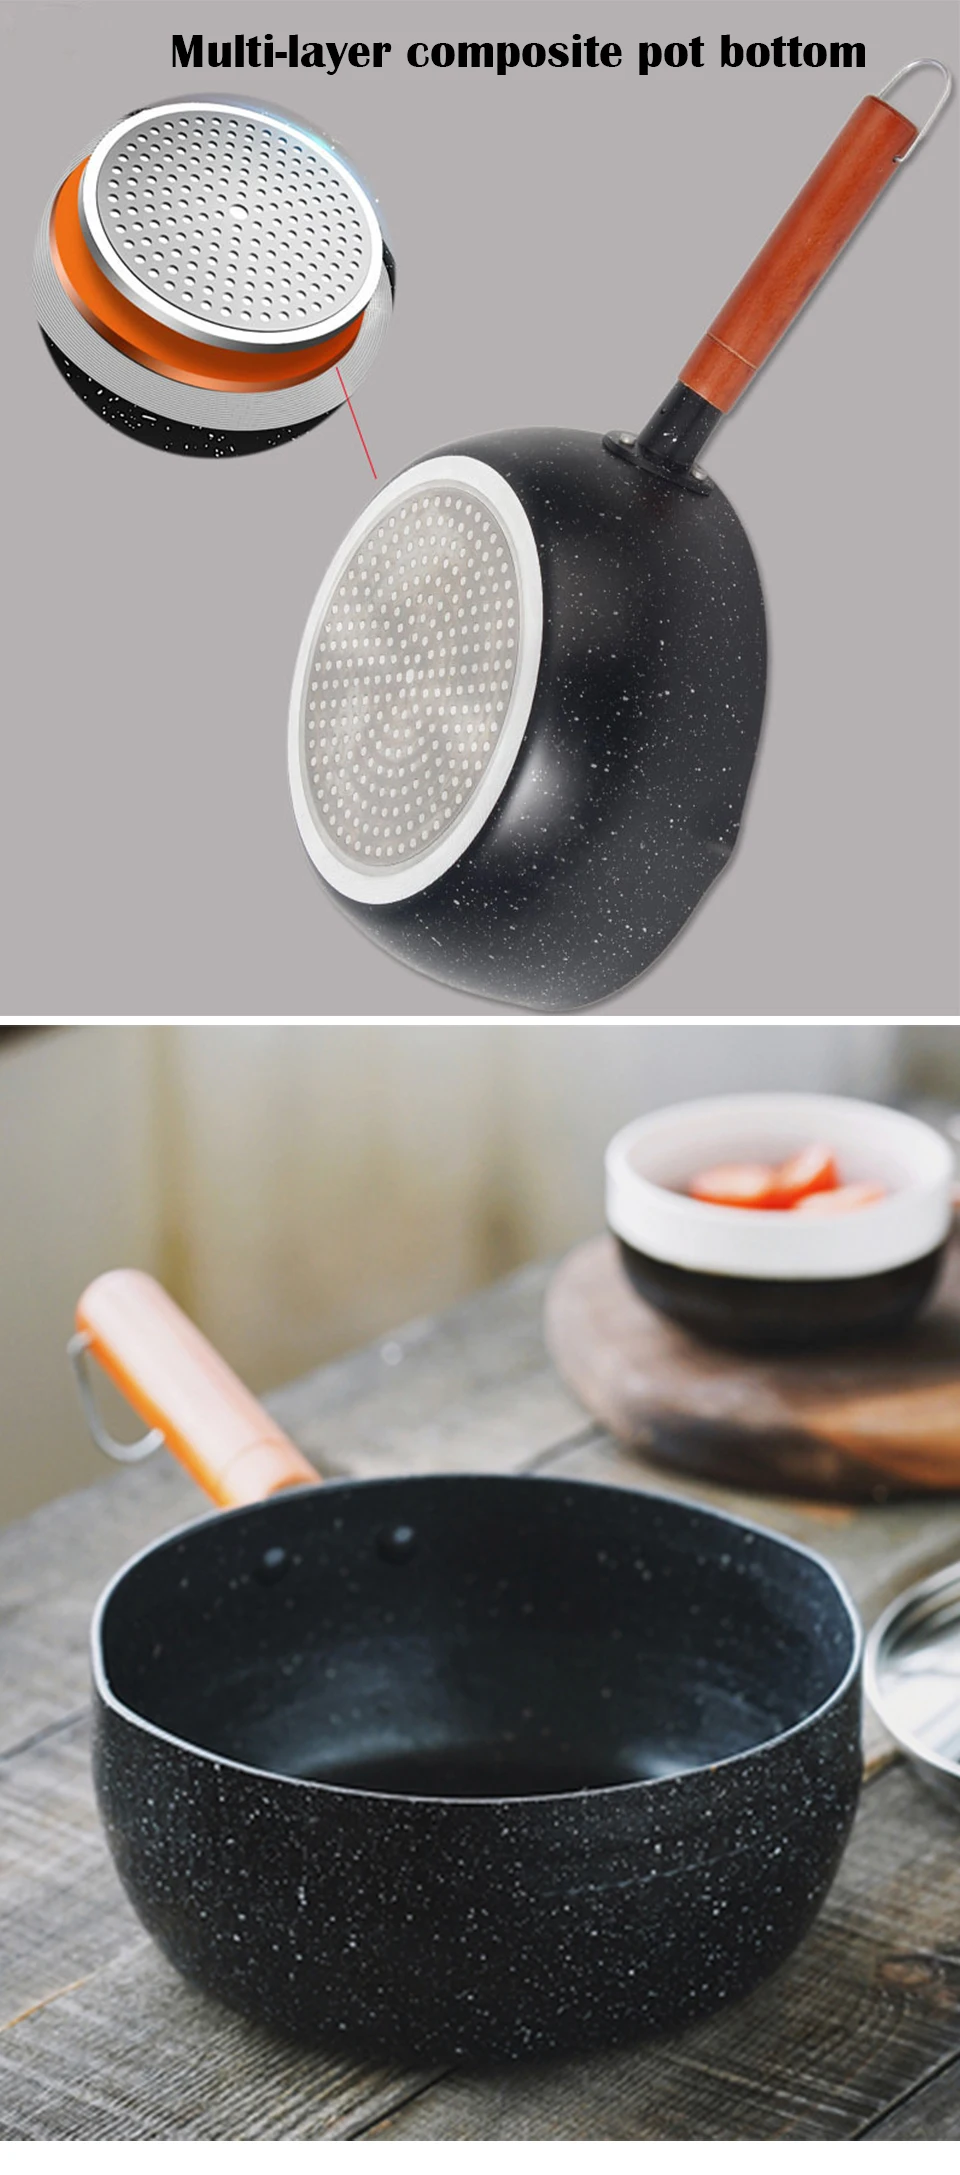 CAKEHOUD японский стиль Maifan Камень антипригарный суп плита с крышкой Электромагнитная совместимость детское питание Дополнение горшок